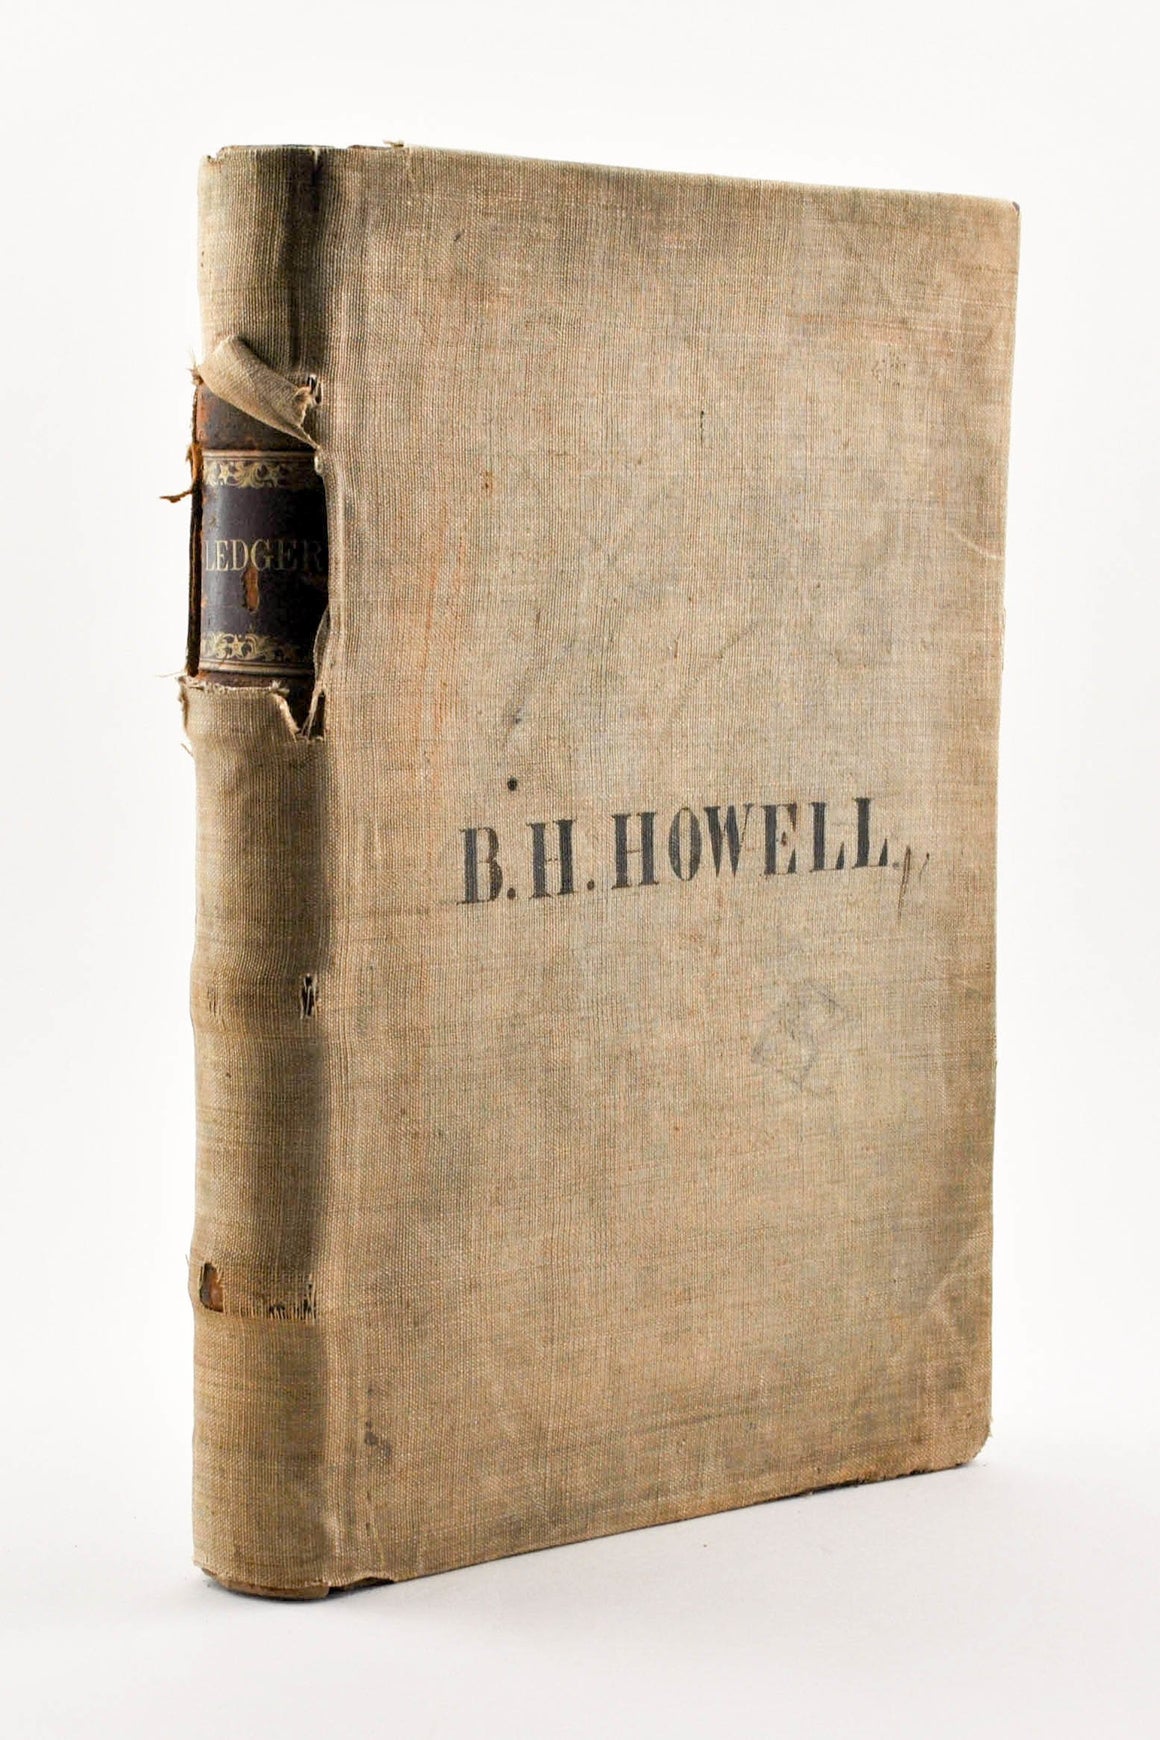 B H Howell Handwritten Ledger 1857 Philadelphia